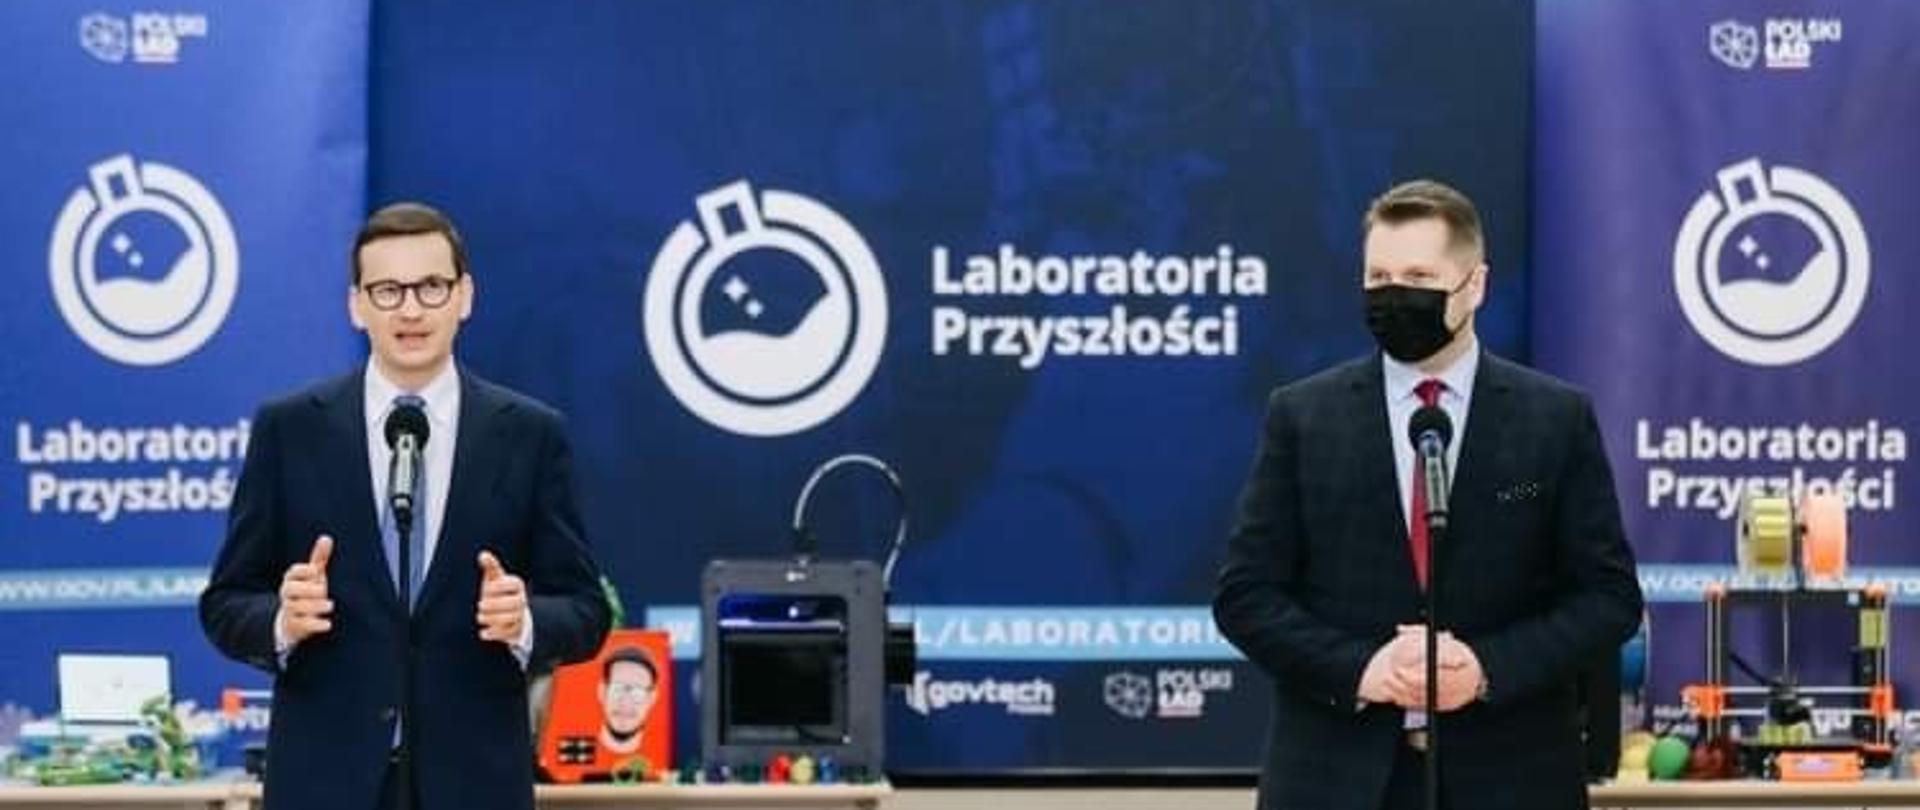 Na zdjęciu po lewej przemawiający Premier Mateusz Morawiecki, obok niego Minister Edukacji i Nauki Przemysław Czarnek. W tle ścianka Laboratoria Przyszłości i sprzęt, który można zakupić w ramach programu. 